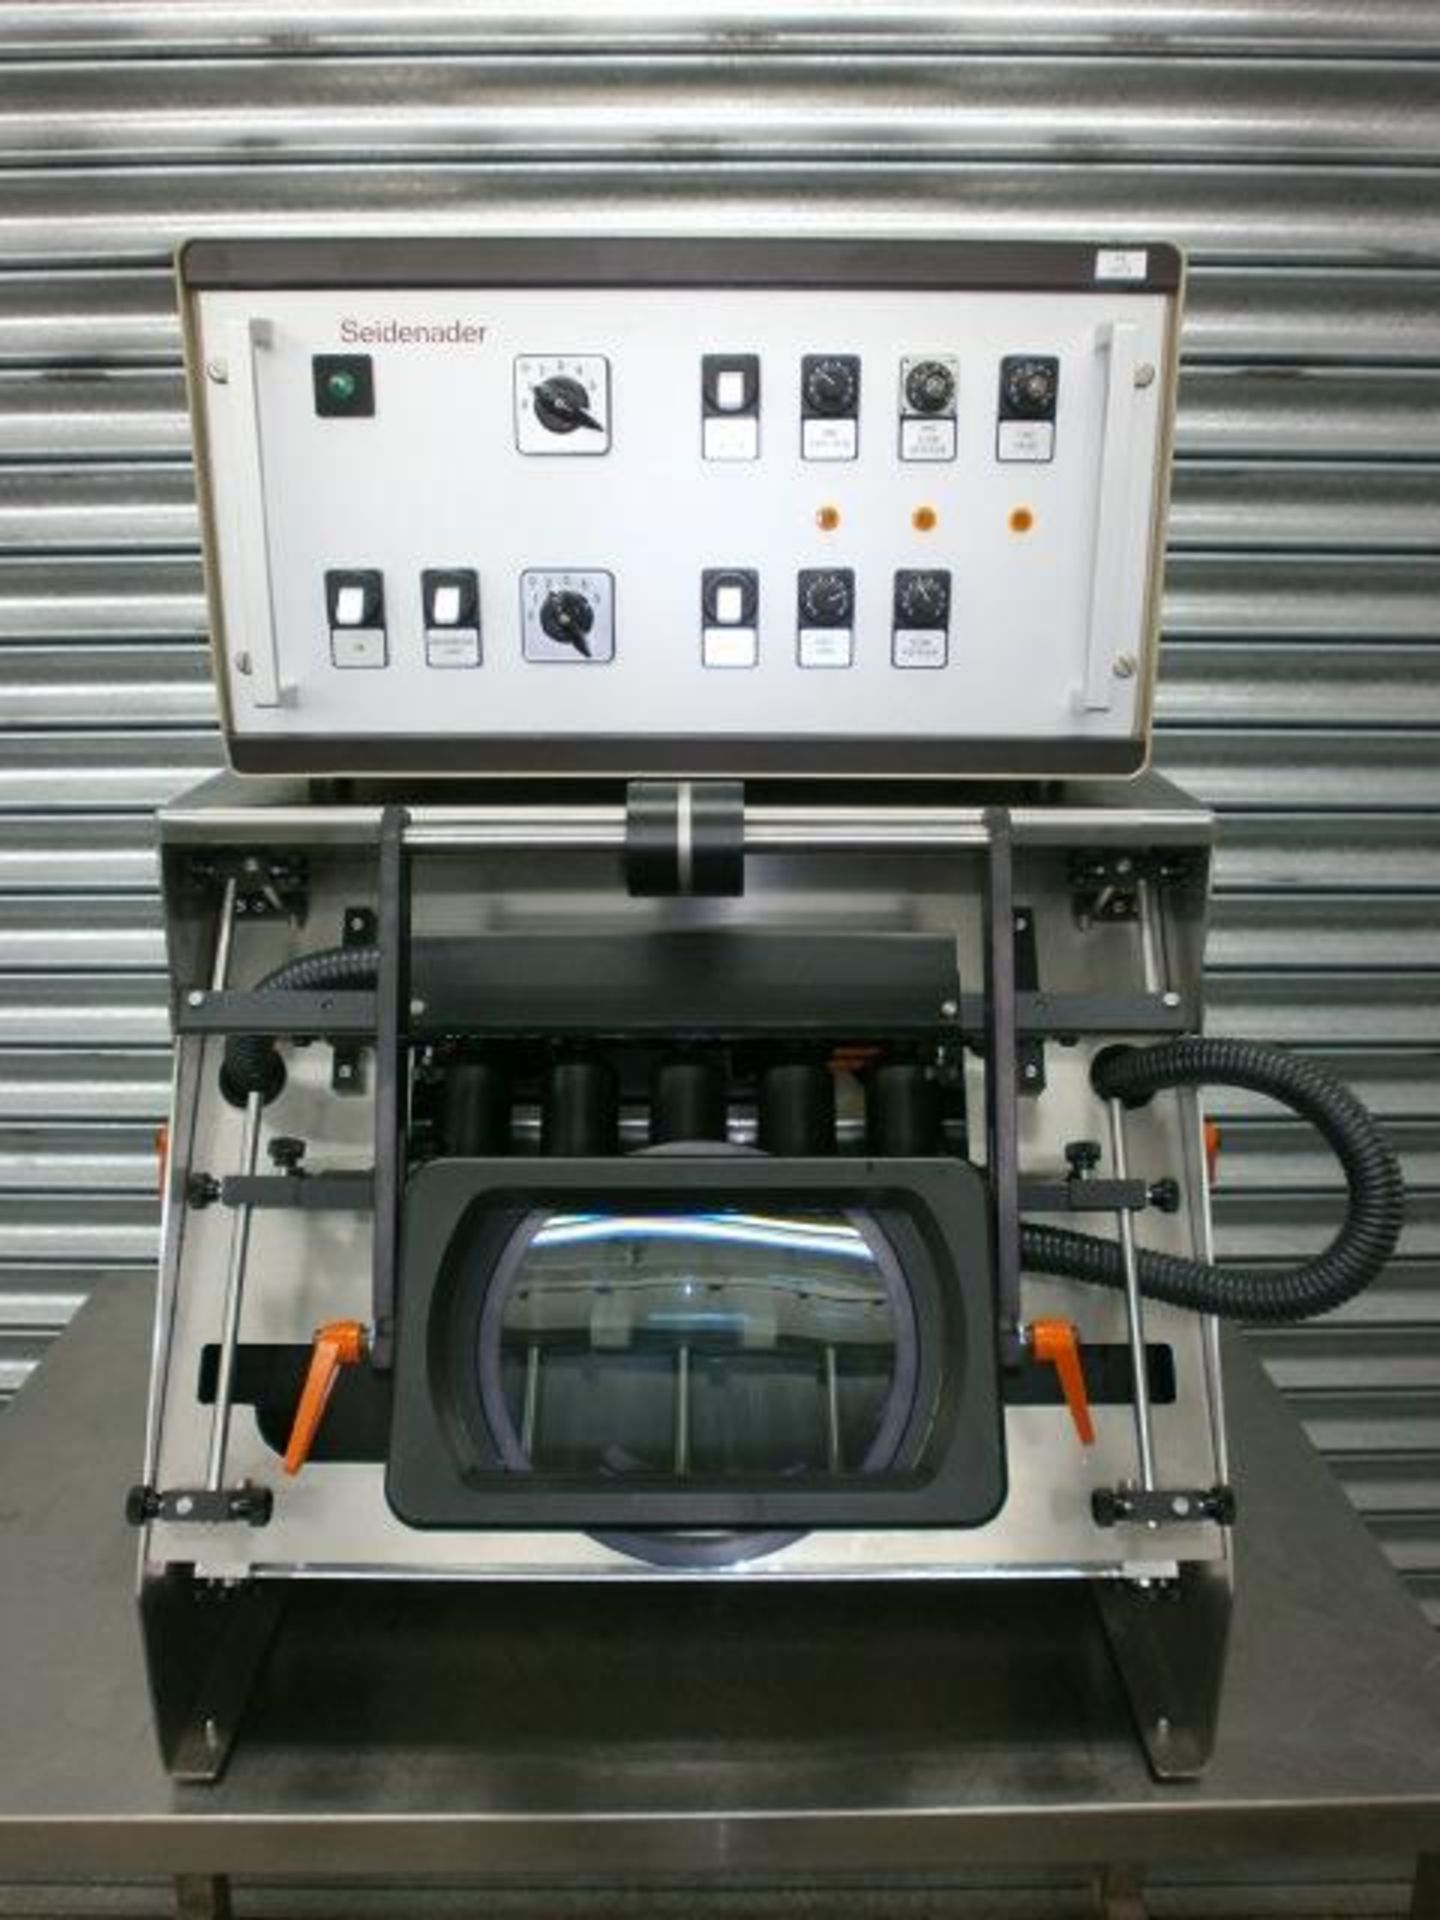 Seidenader Vial & Ampoule Inspection Machine Model